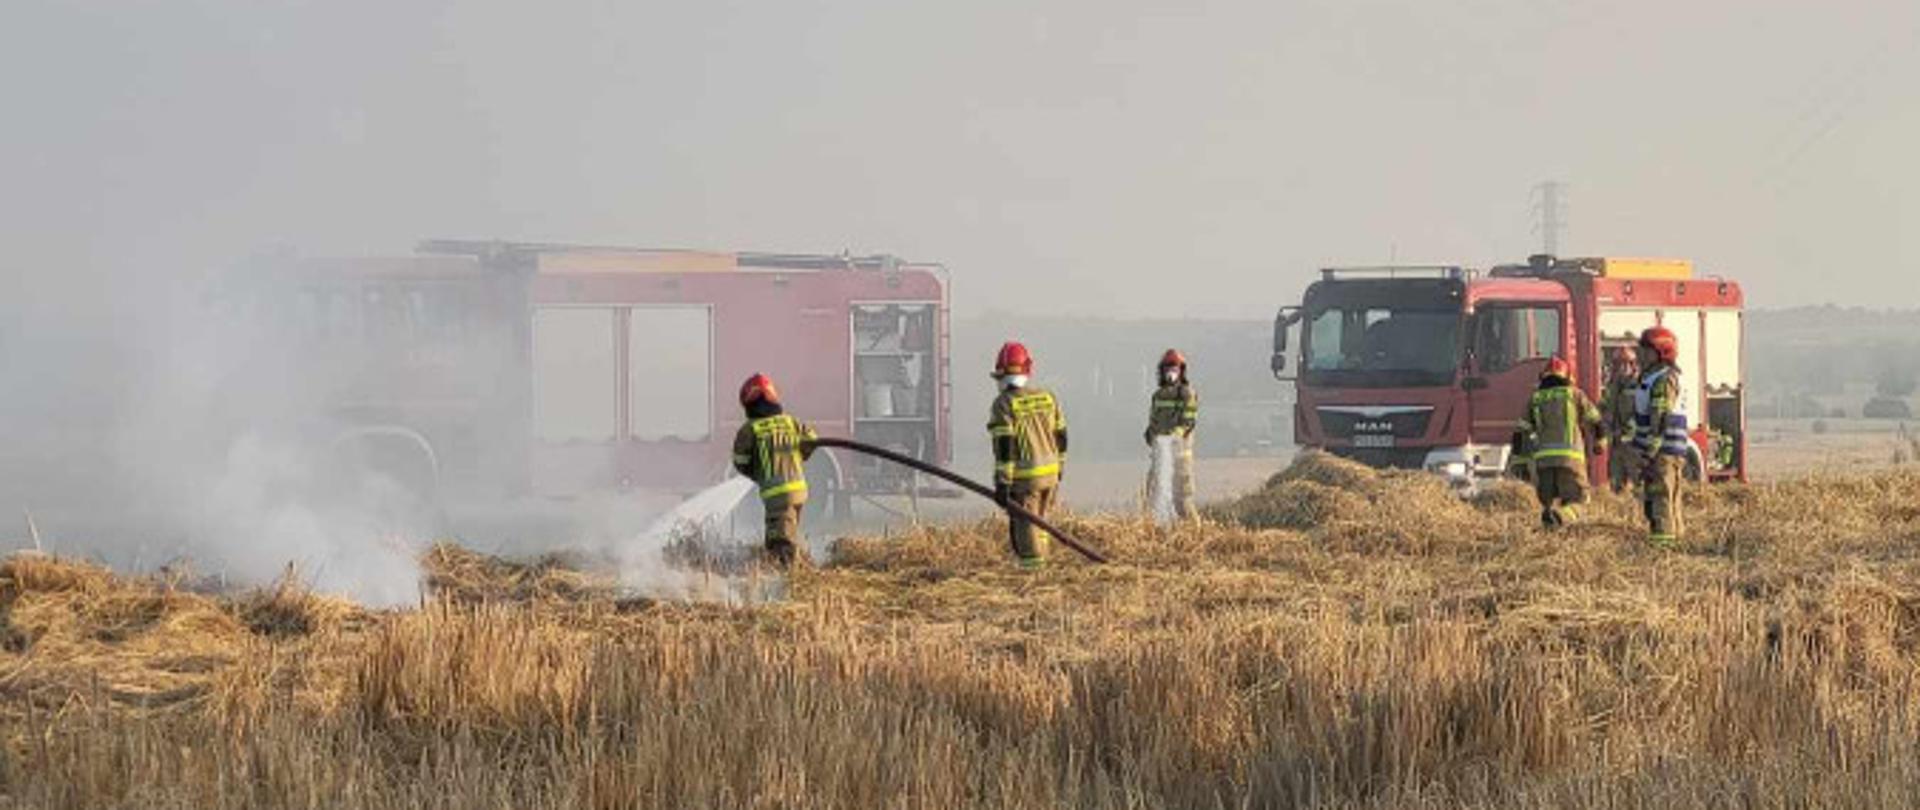 Zdjęcie przedstawia strażaków oraz dwa wozy strażackie podczas pożaru zboża na pniu. Jeden ze strażaków podaje prąd wody w natarciu na palące się zboże.